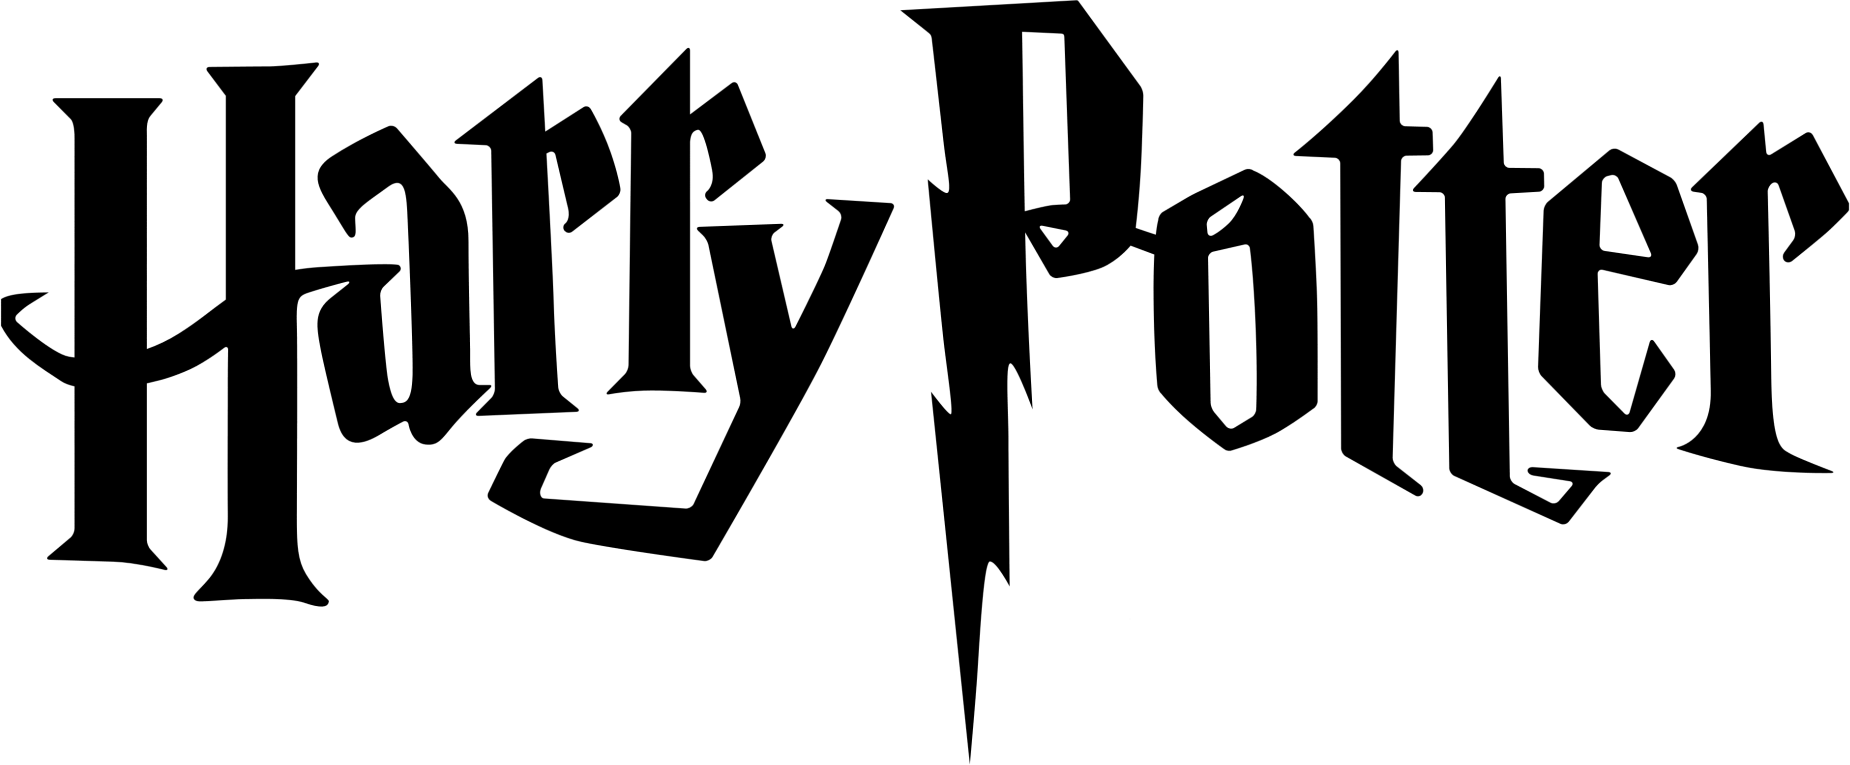 Harry Potter Logo Forum Dafont Com